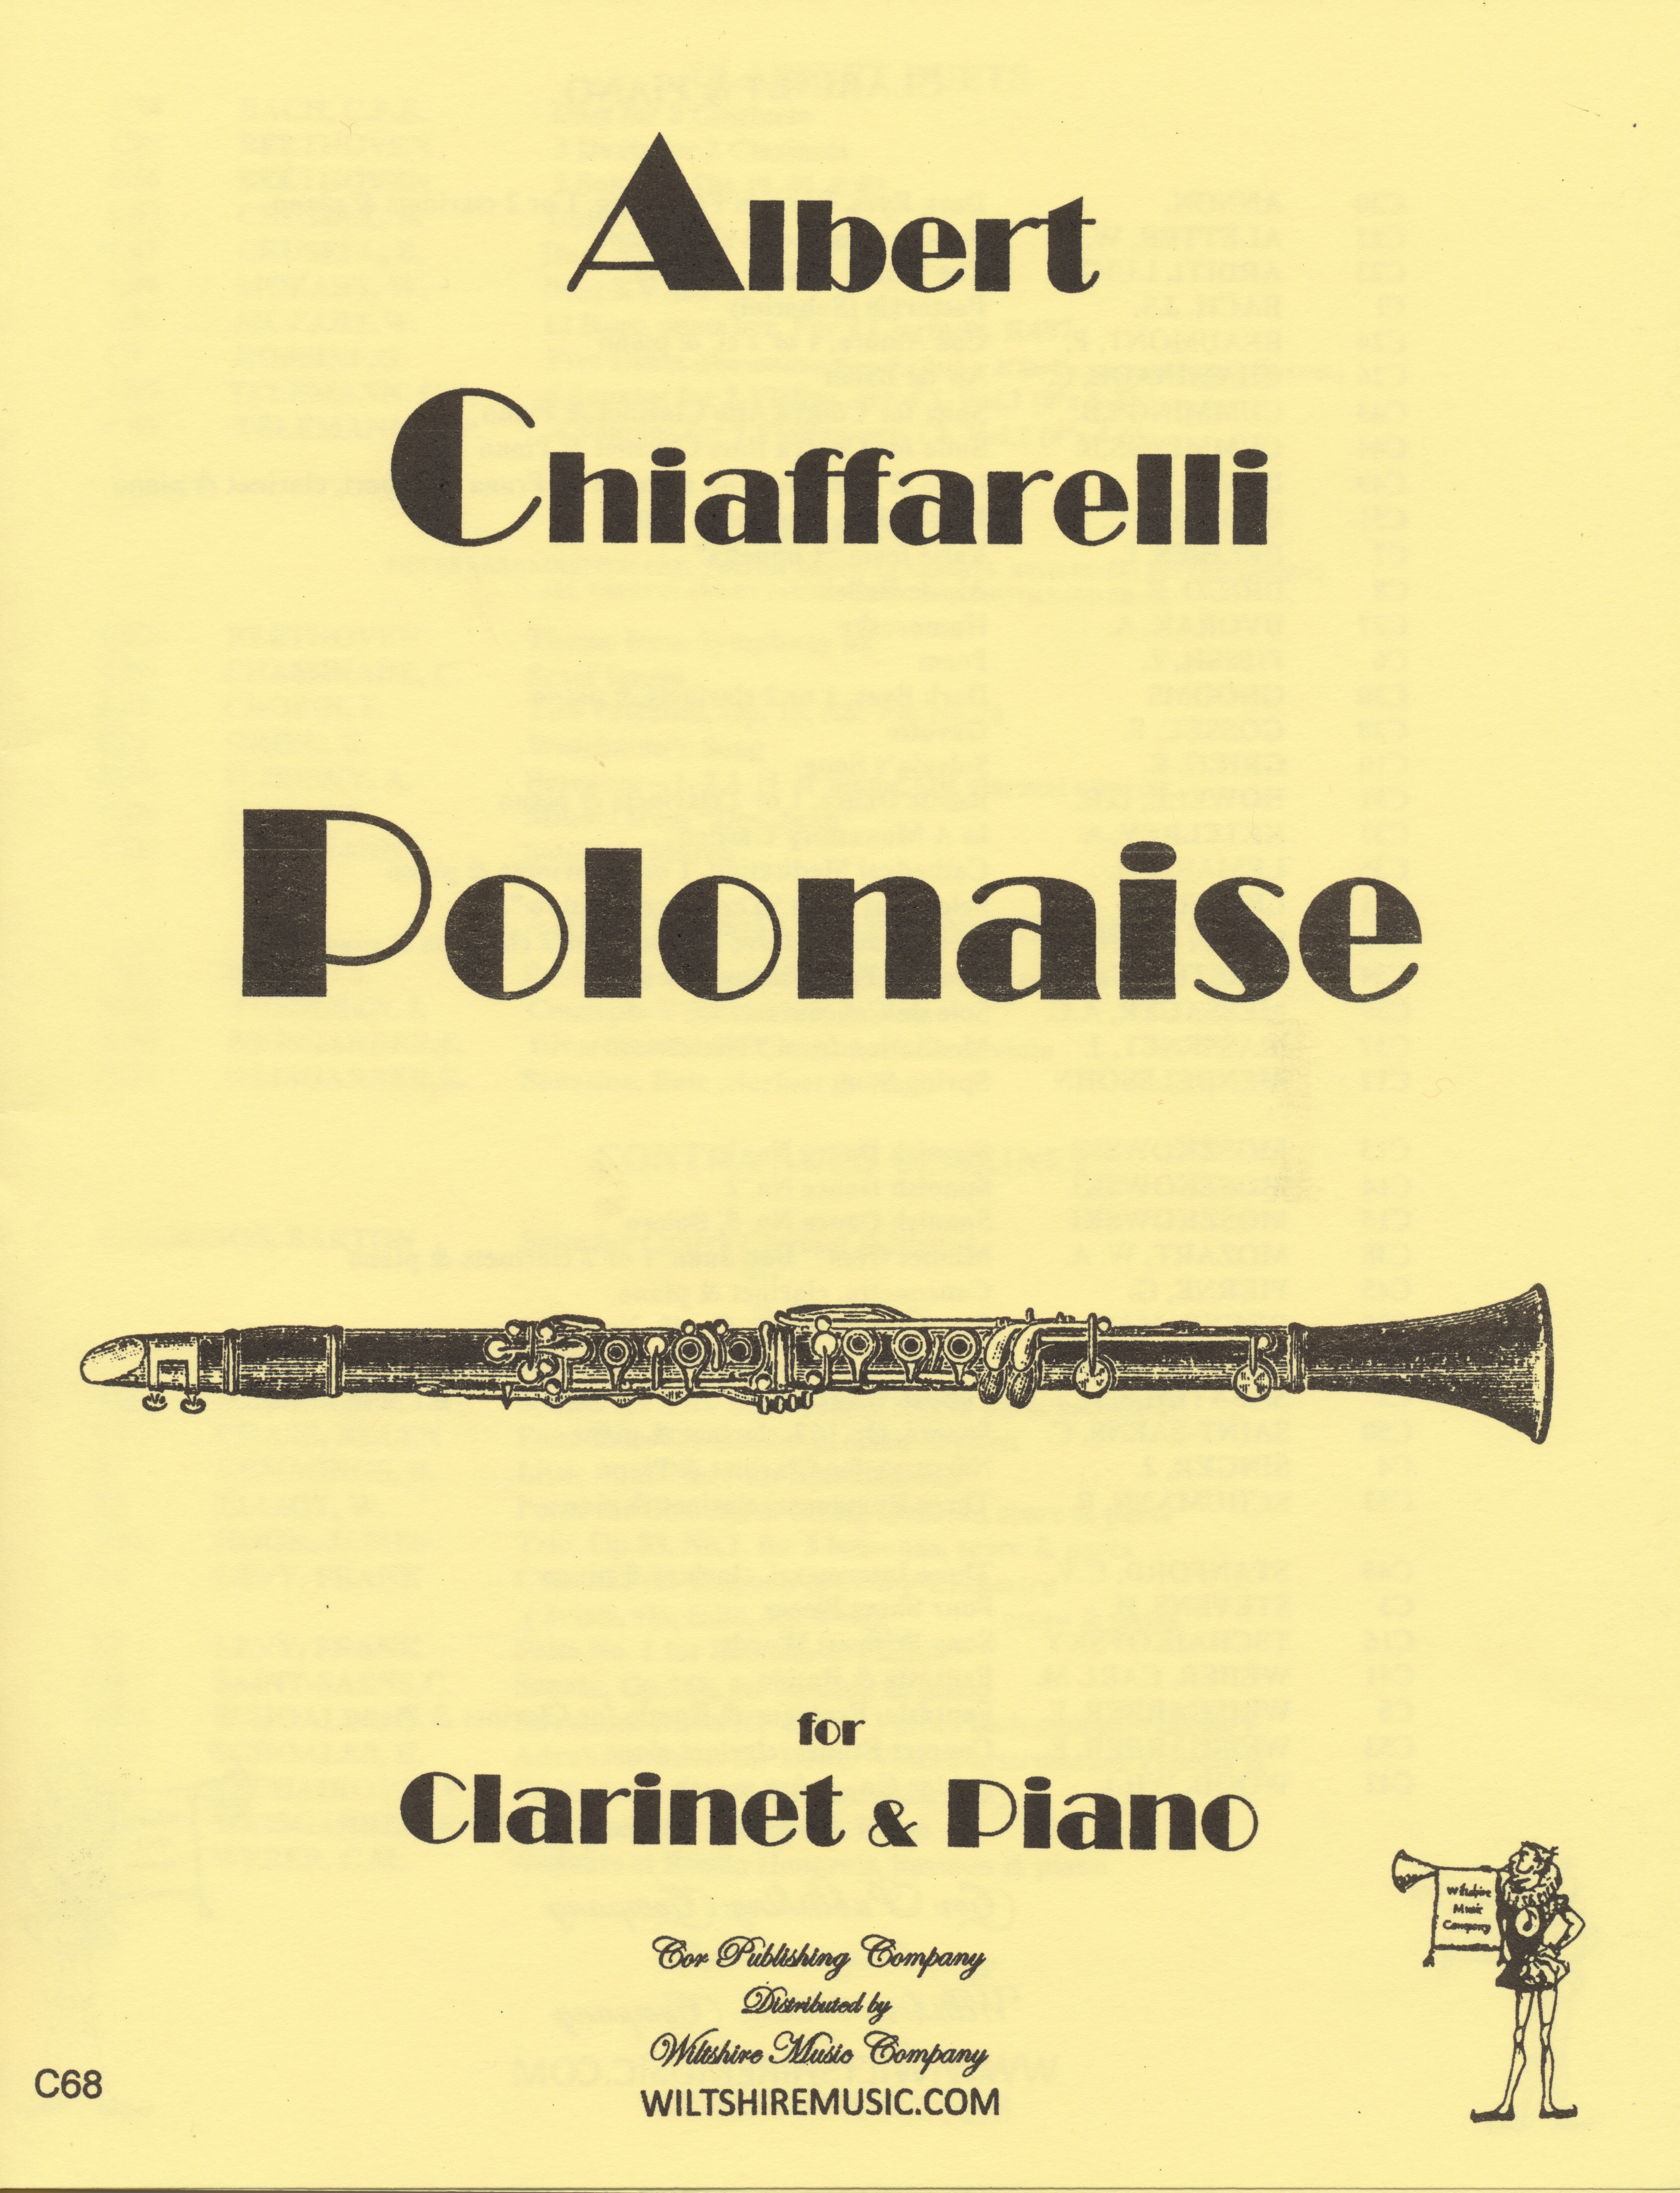 Polonaise, A. Chiaffarelli, clarinet & piano